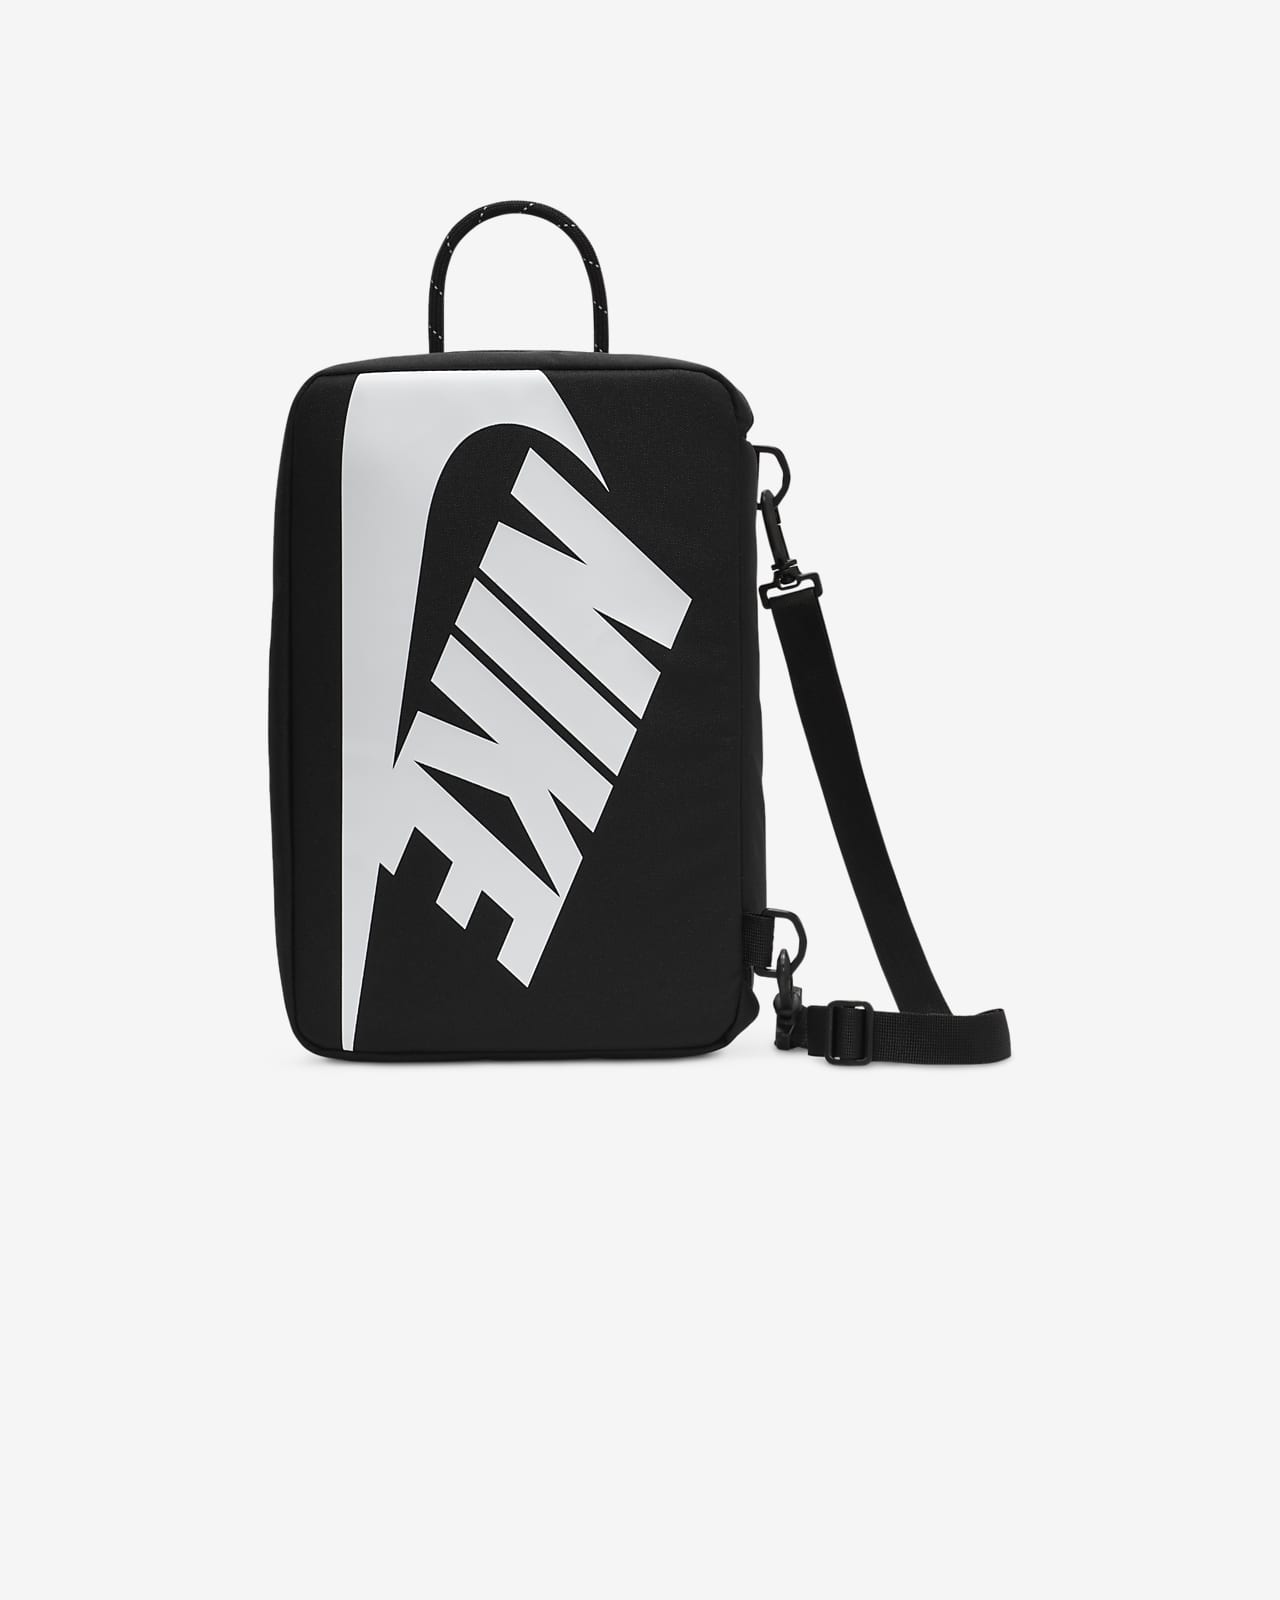 3-5/8 Hoàn Tiền 25%] Túi đựng giày thể thao Nike Shoe Box Bag 2 Màu Đen Cam  DA7337-010 có dây đeo tiện dụng | Lazada.vn